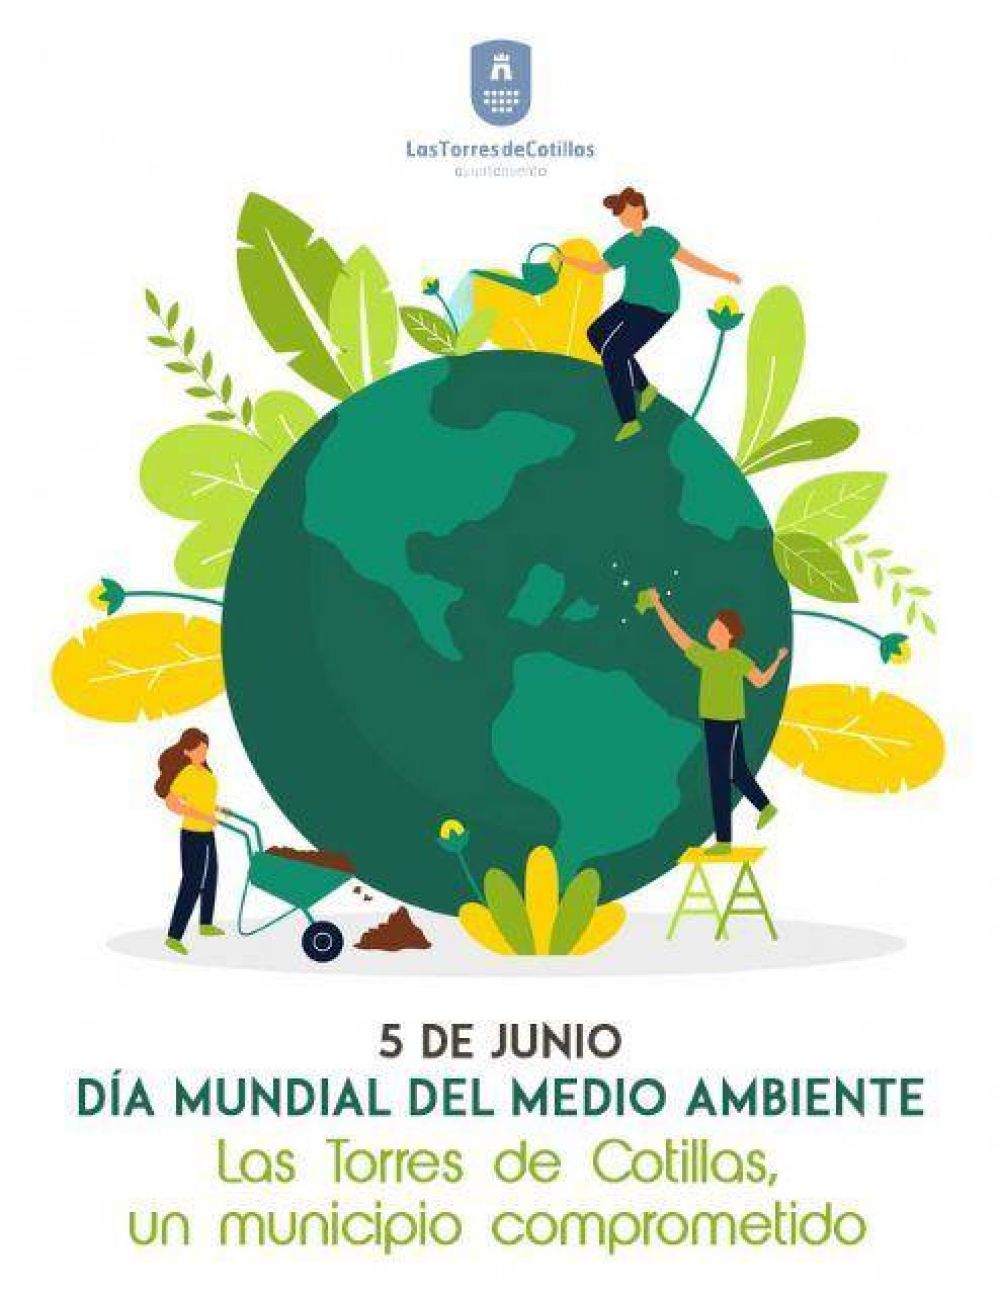 Las Torres de Cotillas celebra el da mundial del medio ambiente con unos niveles de reciclaje que reafirman su compromiso verde